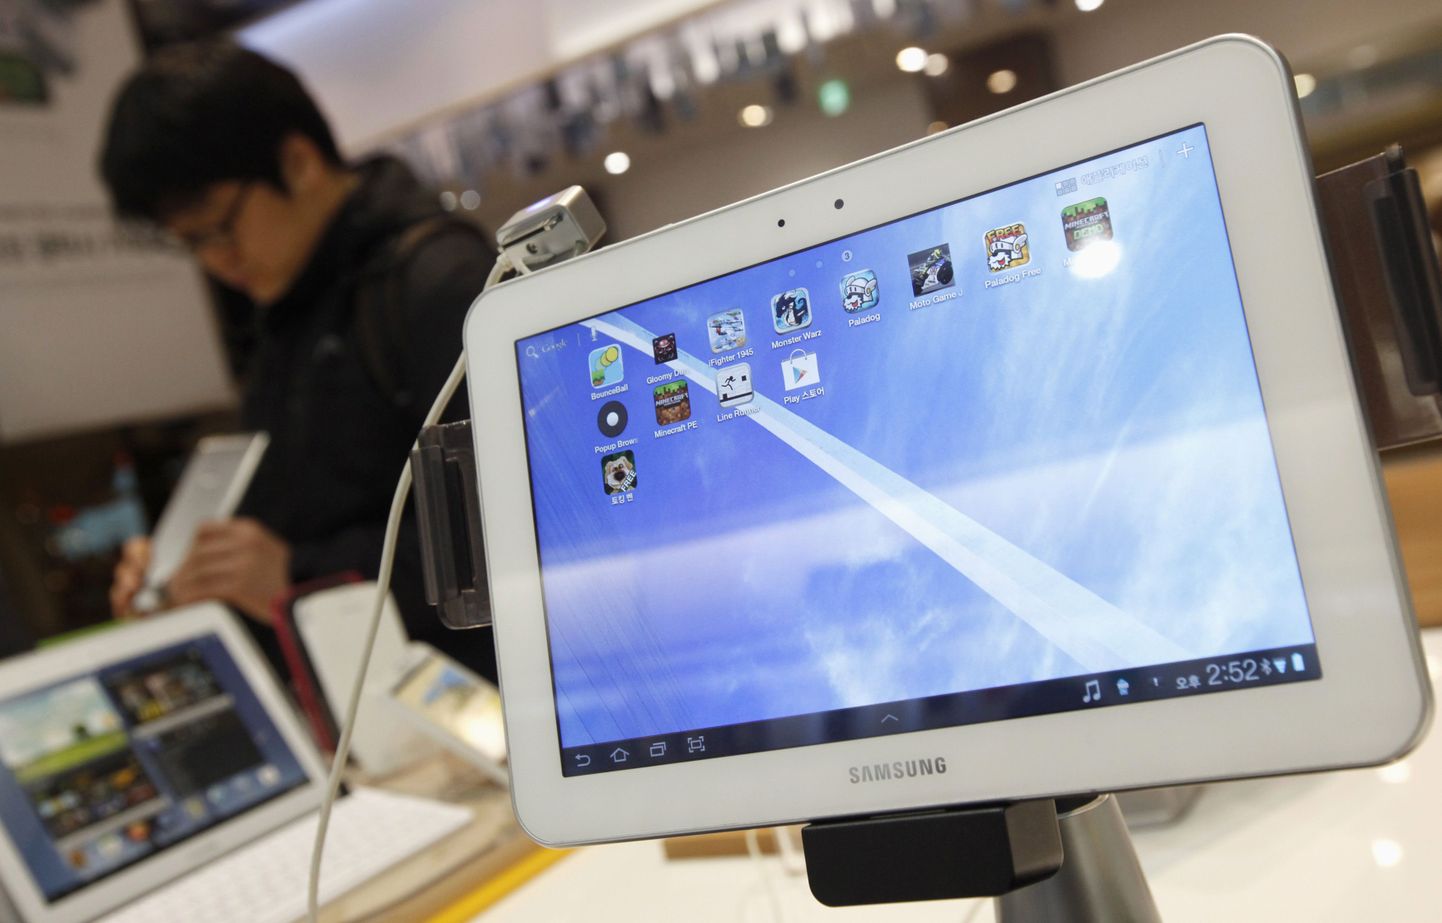 Viimase poolaasta ostetuim tahvelarvuti Eestis oli Samsung Galaxy Tab2.